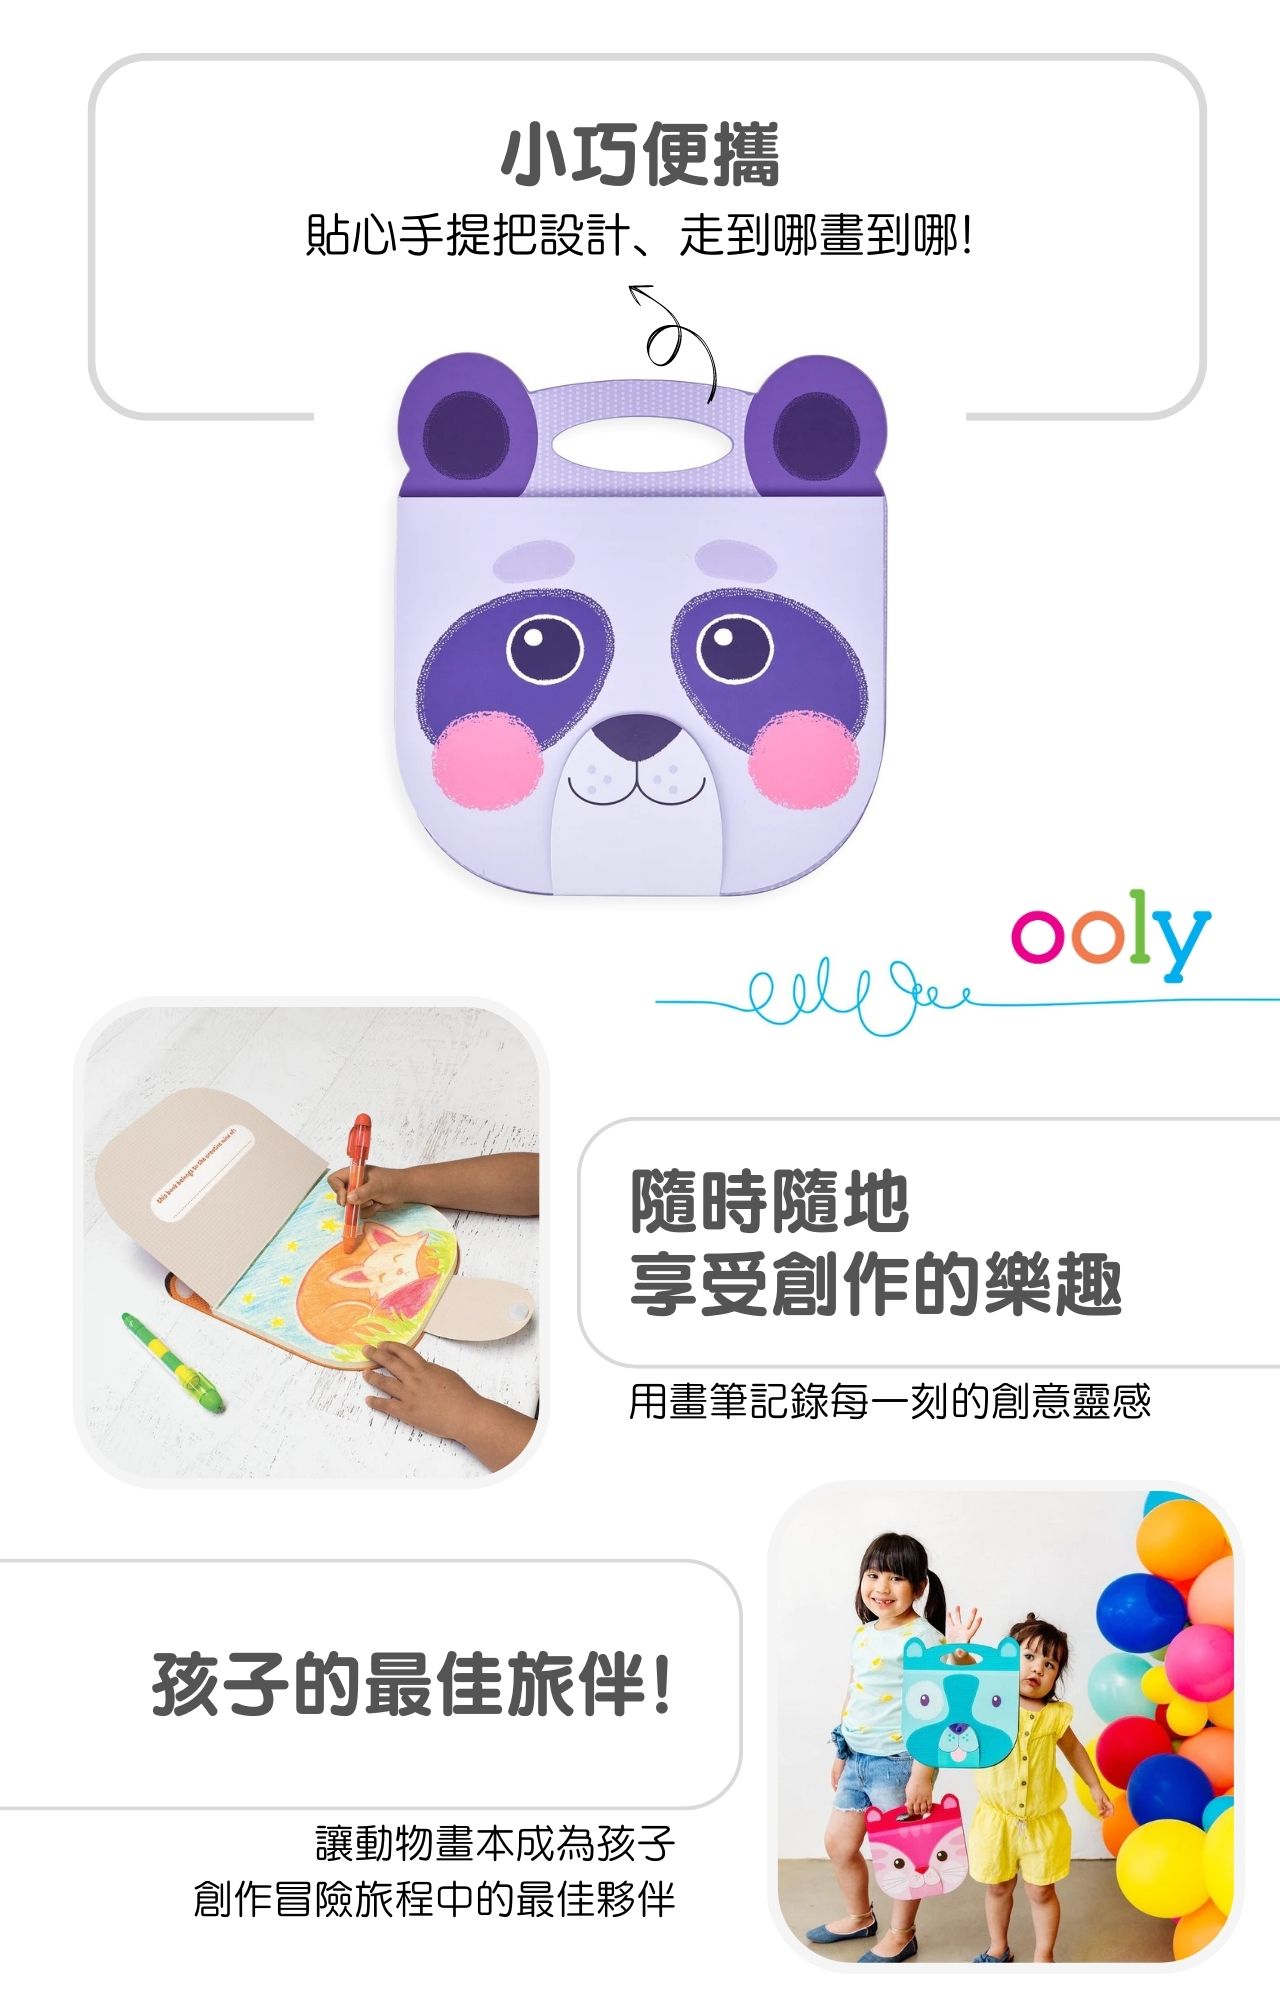 美國ooly可愛動物造型畫本系列-熊貓款_產品說明圖 (2)